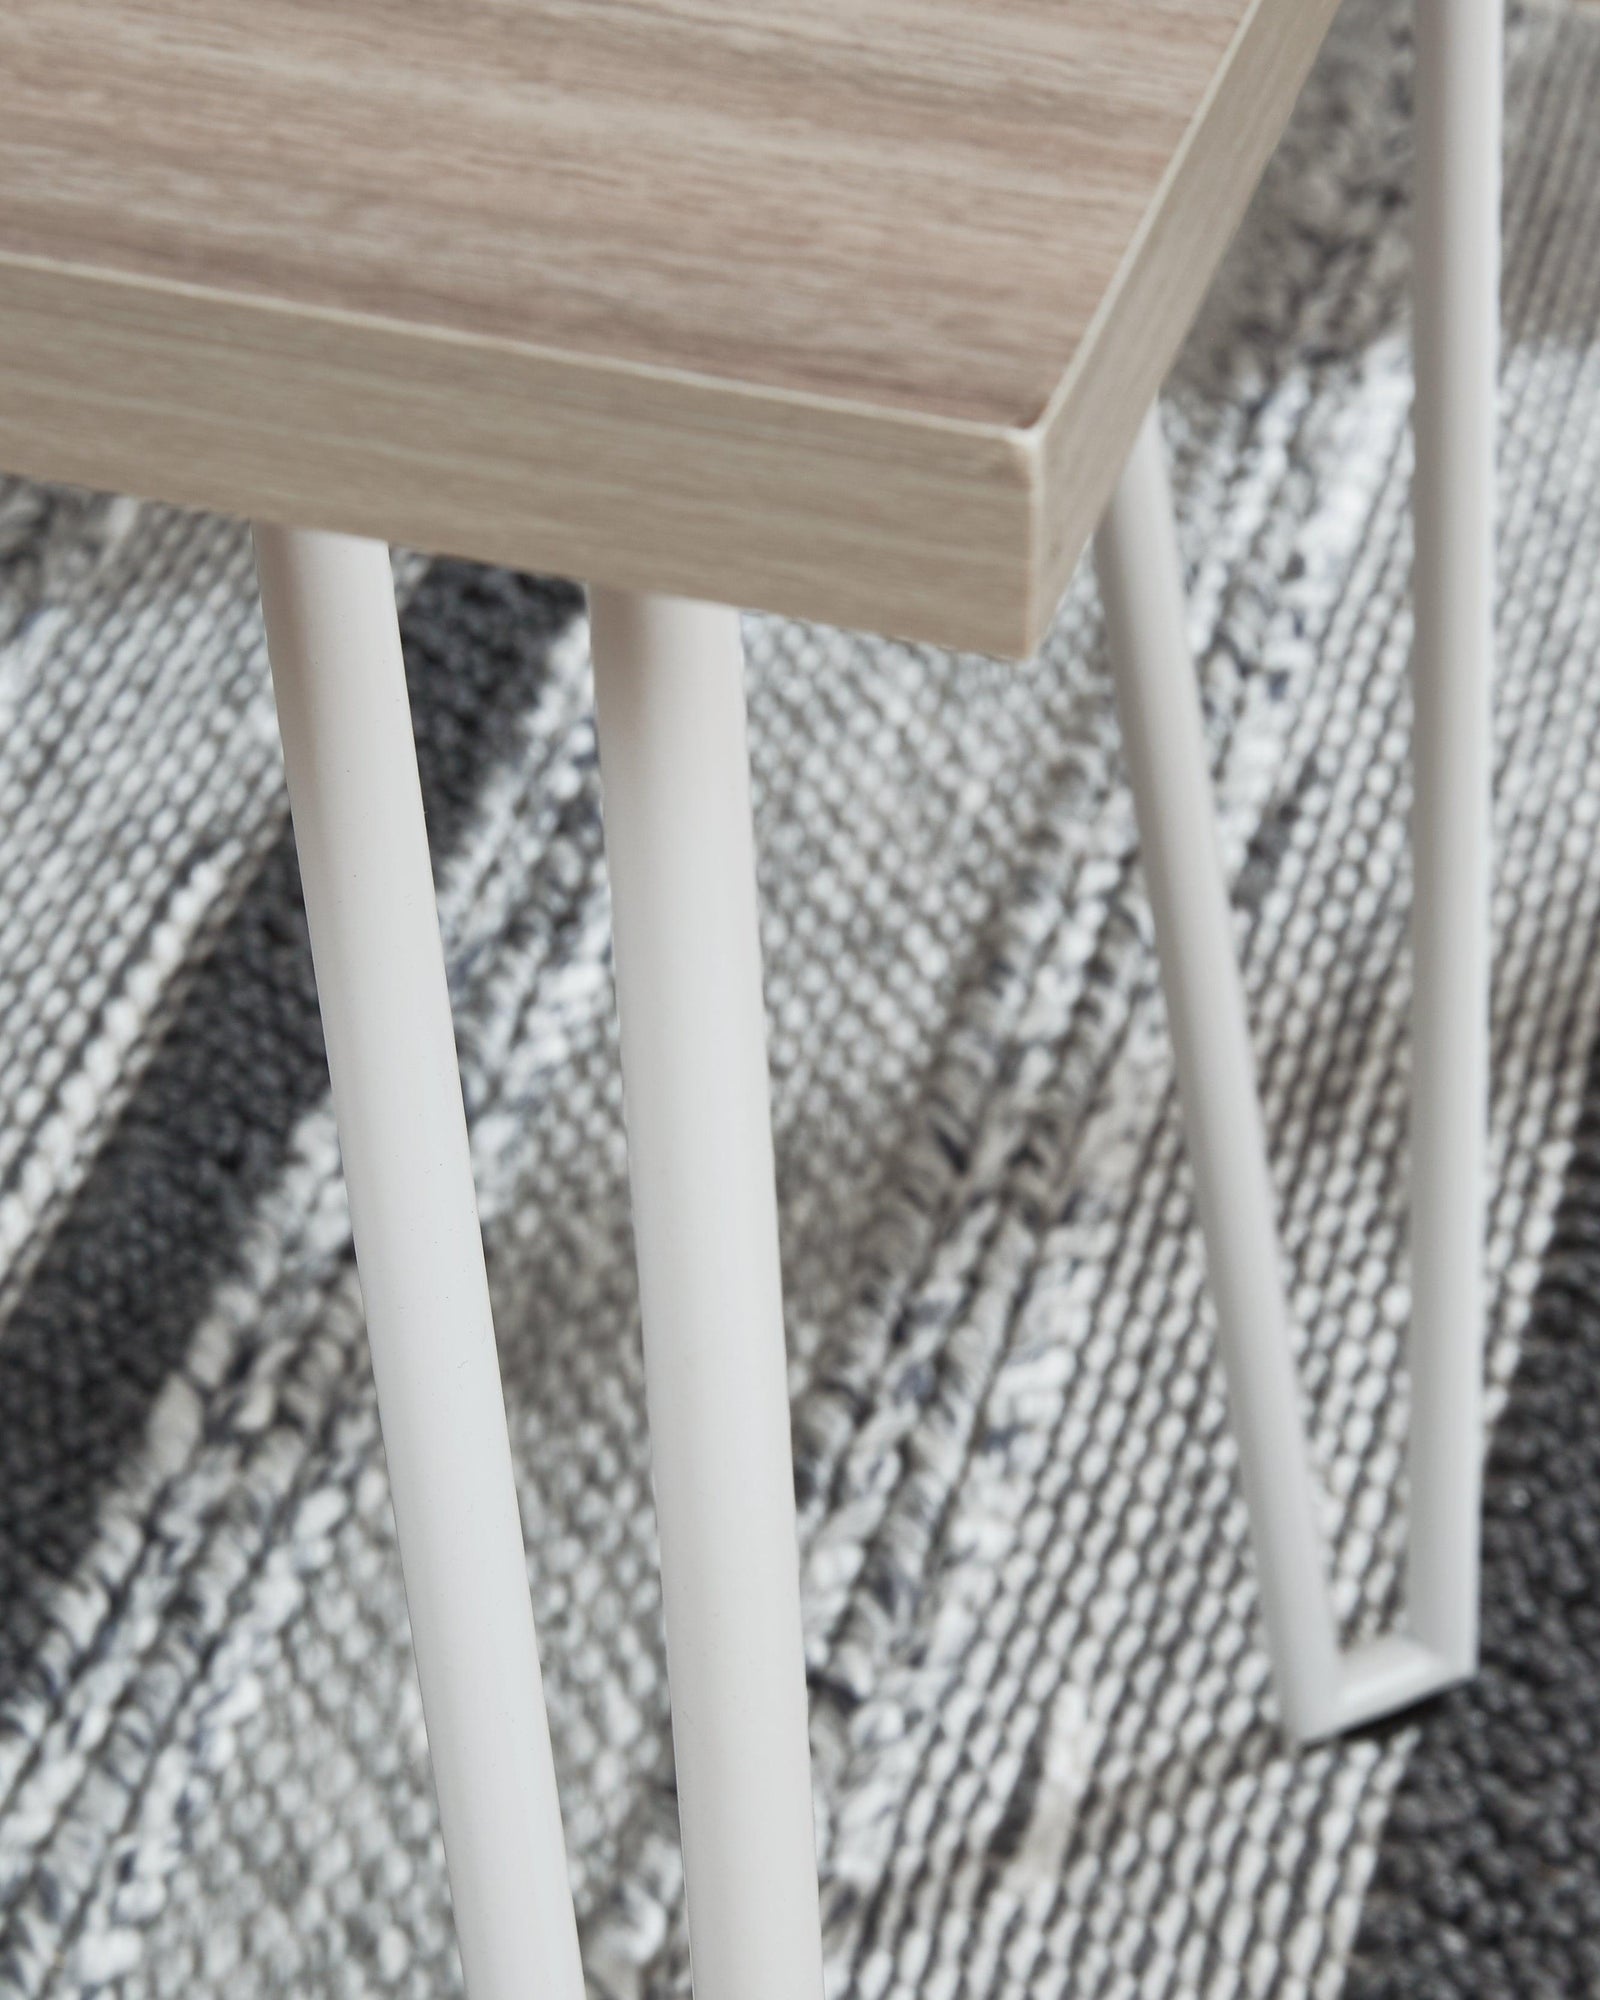 Blariden Brown/white Desk With Bench - Ella Furniture